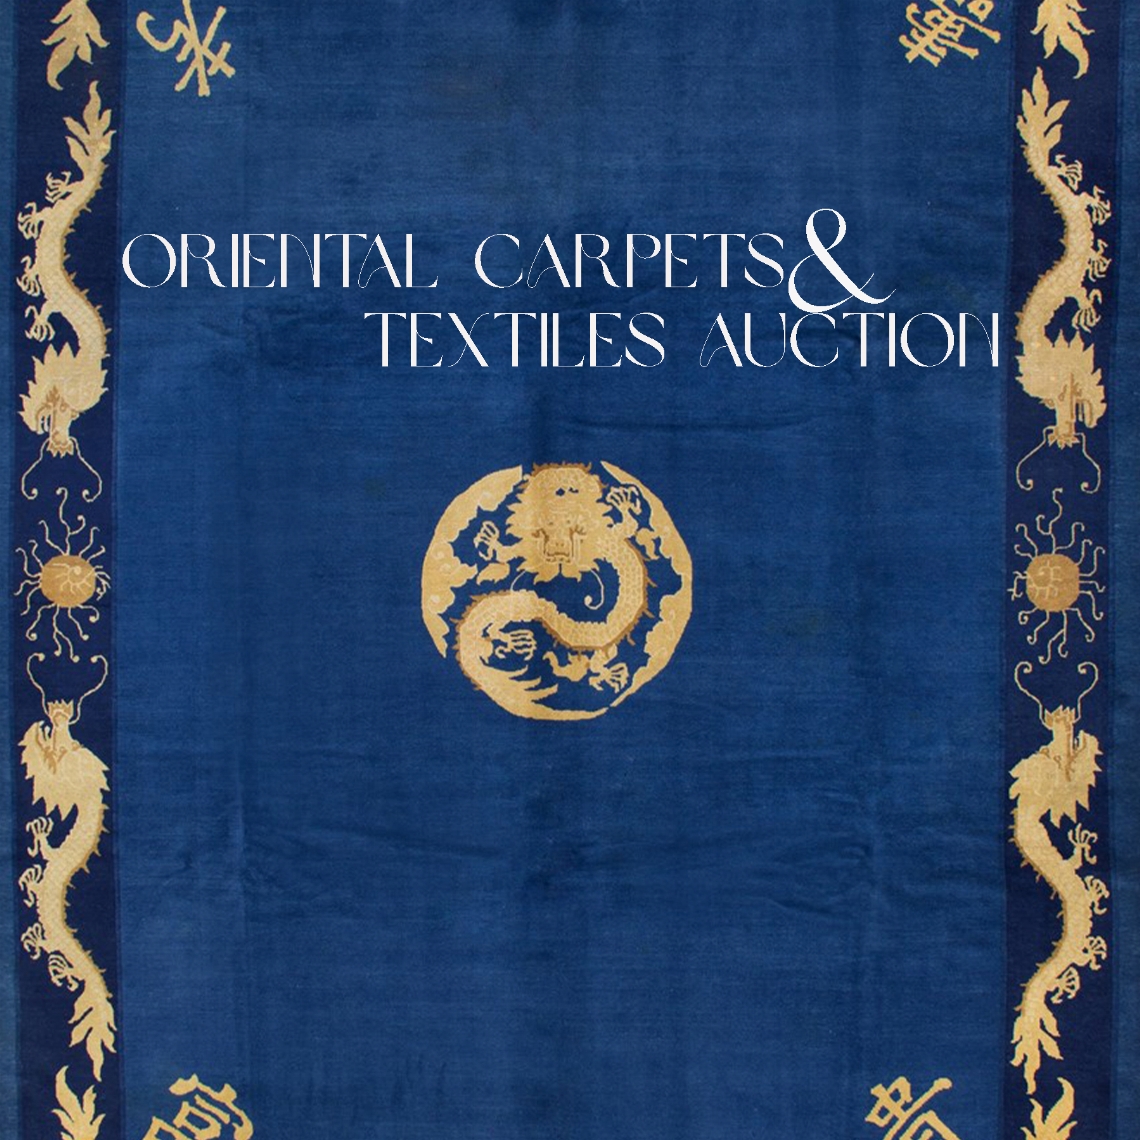 ORIENTAL CARPETS & TEXTILES AUCTION